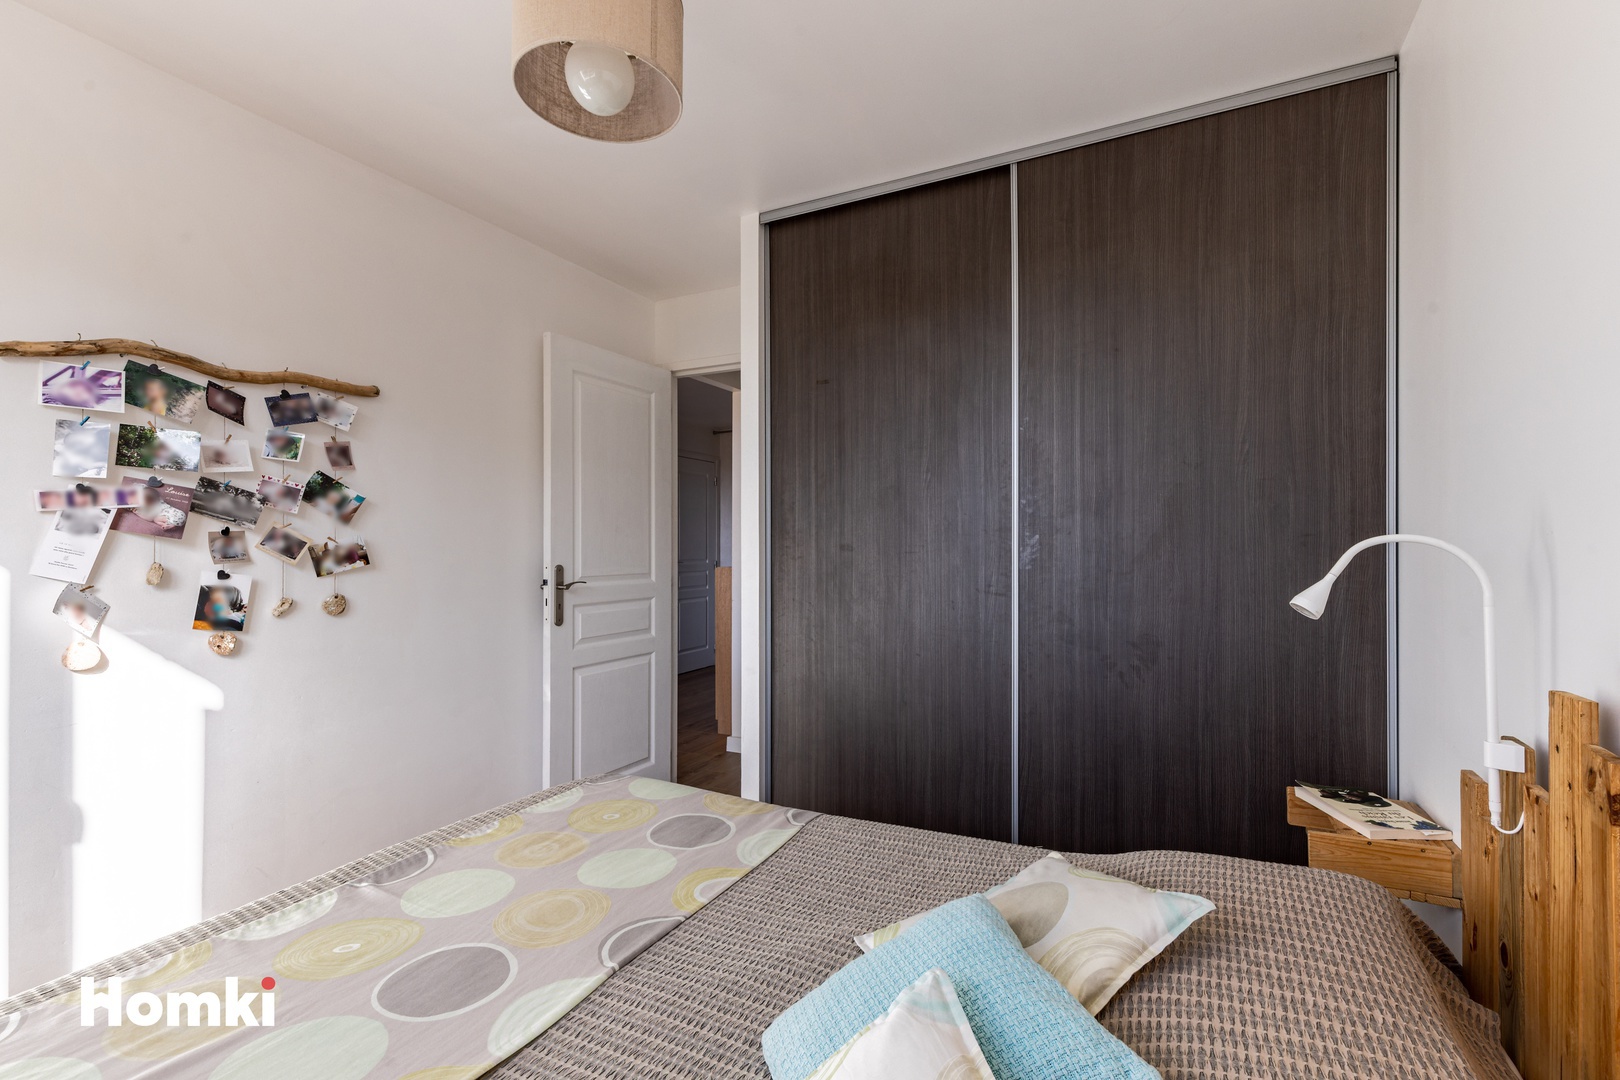 Homki - Vente Appartement  de 33.0 m² à Sausset-les-Pins 13960